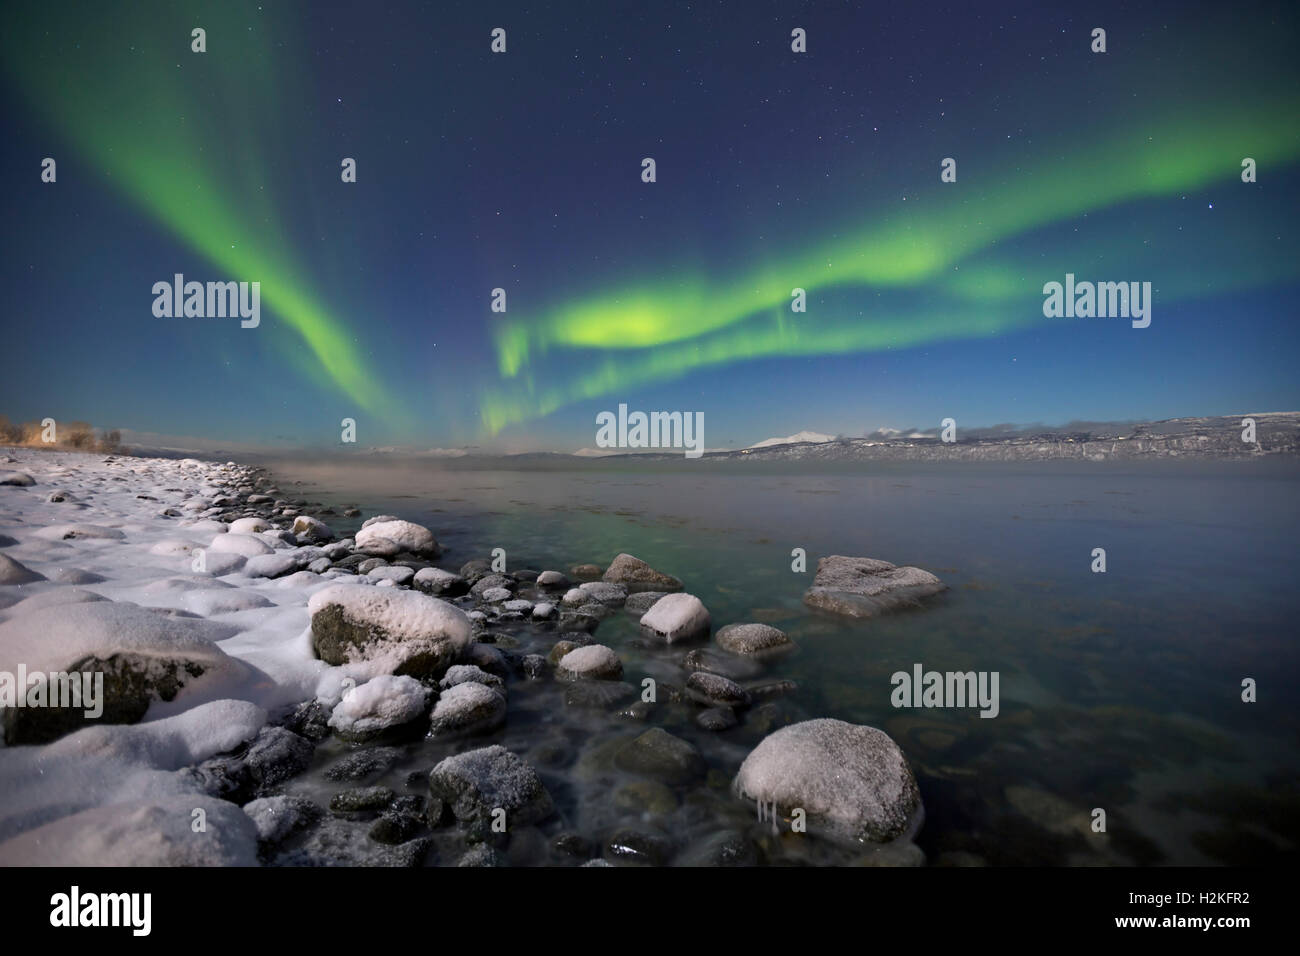 Les aurores boréales au-dessus d'un fjord au clair de lune, dans le nord de la Norvège en hiver. Banque D'Images